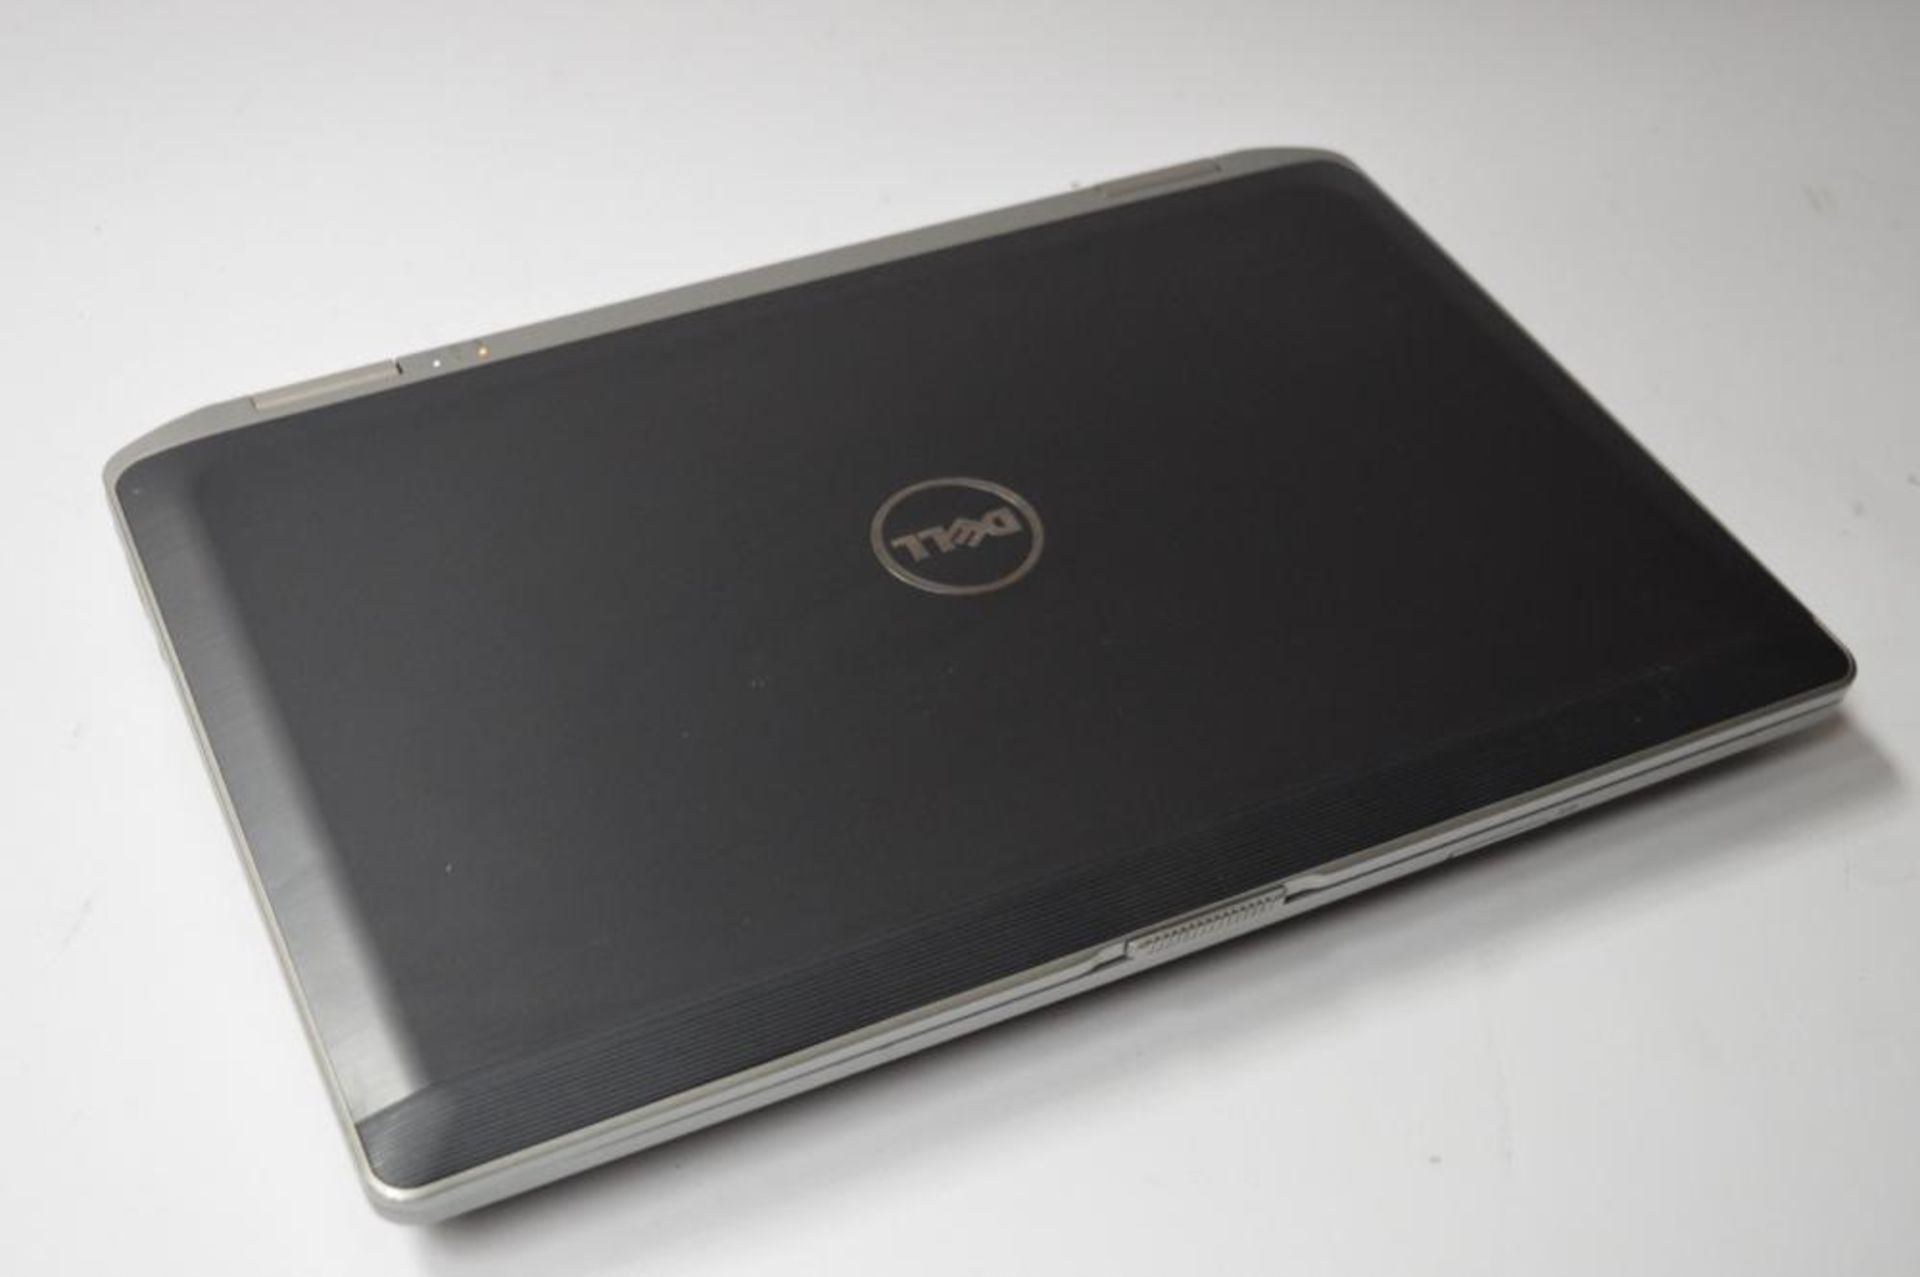 1 x Dell Latitude E6430 Laptop Computer - 14 Inch Screen - Features Intel Core i5 2.6ghz Processor a - Bild 5 aus 5